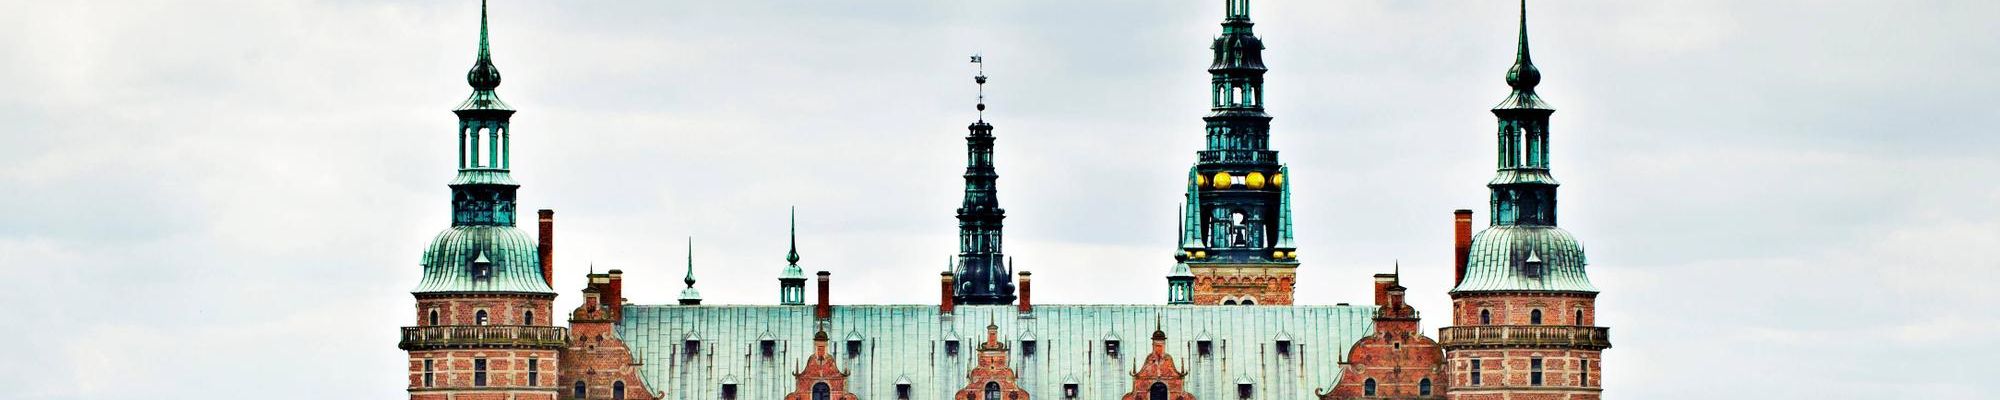 Das Nationalhistorische Museum - Schloss Frederiksborg